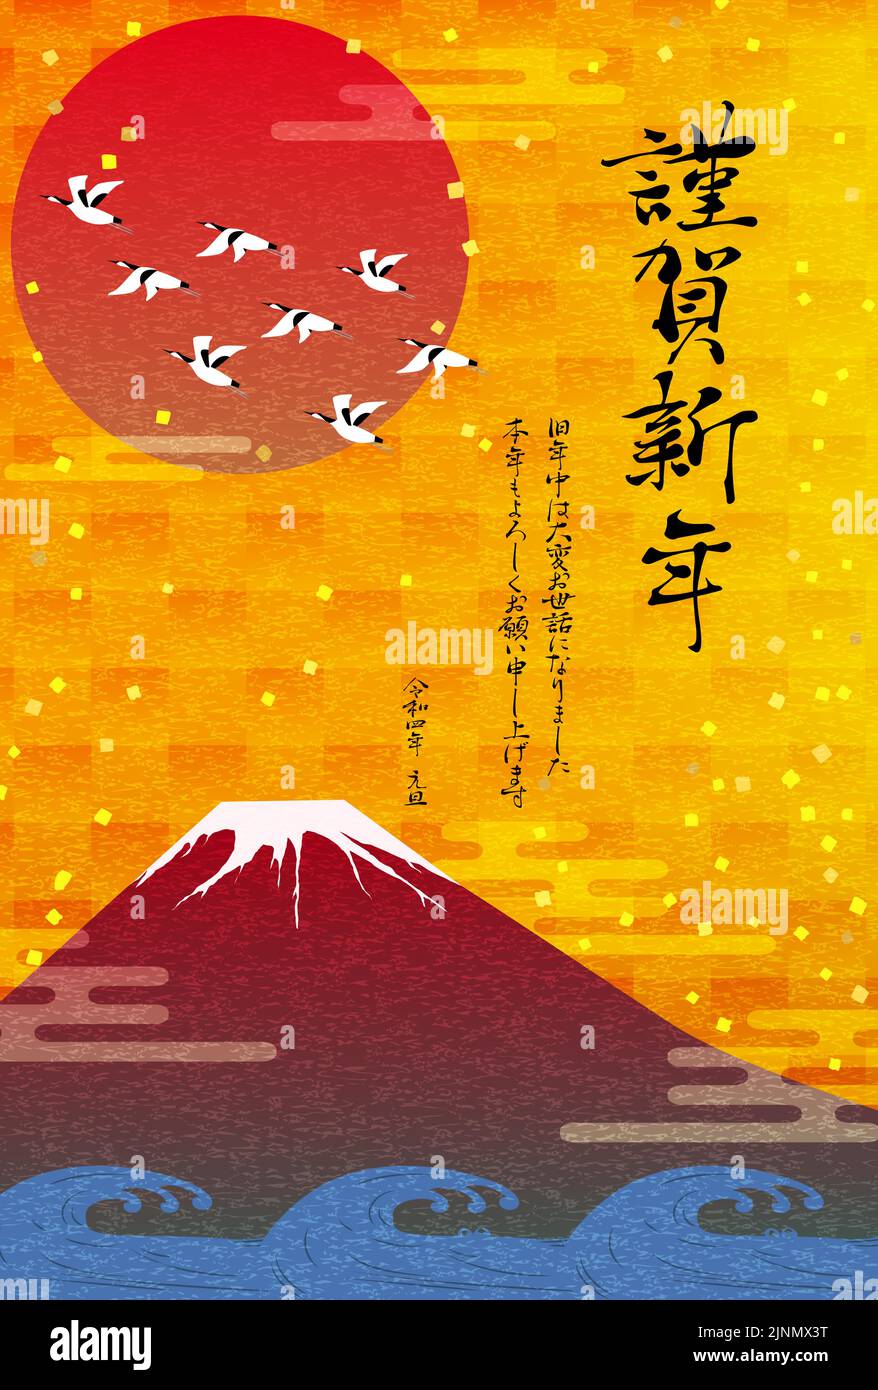 Red Fuji, Waves and Cranes: Neujahrsgrüßkarten für 2022 -Übersetzung: Vielen Dank für all Ihre Hilfe während des letzten Jahres, und ich freue mich auf w Stock Vektor